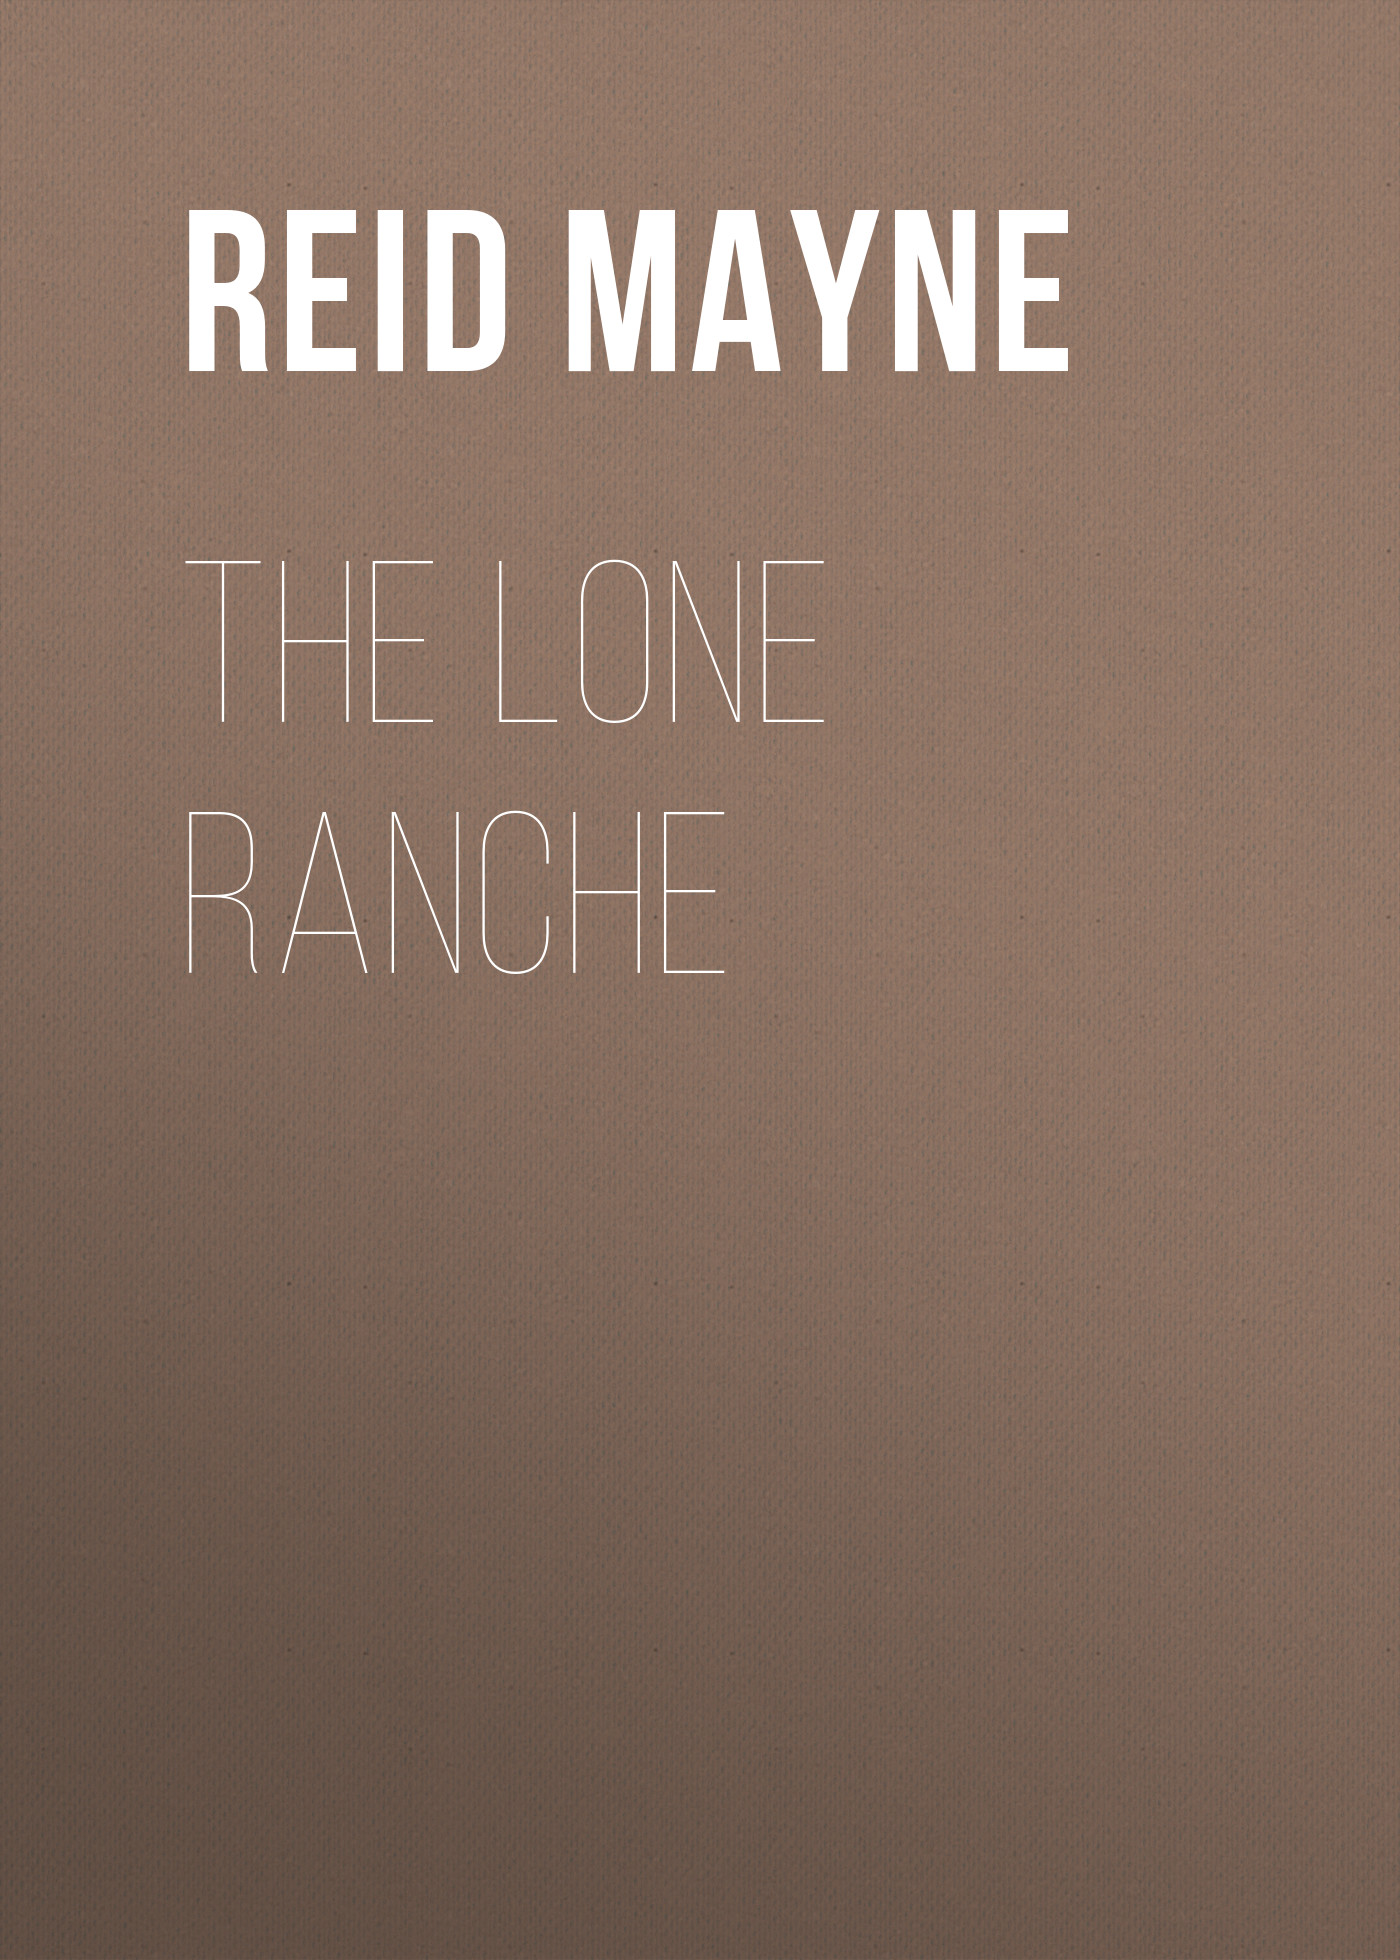 Книга The Lone Ranche из серии , созданная Mayne Reid, может относится к жанру Литература 19 века, Зарубежная старинная литература, Зарубежная классика. Стоимость электронной книги The Lone Ranche с идентификатором 25451380 составляет 0 руб.